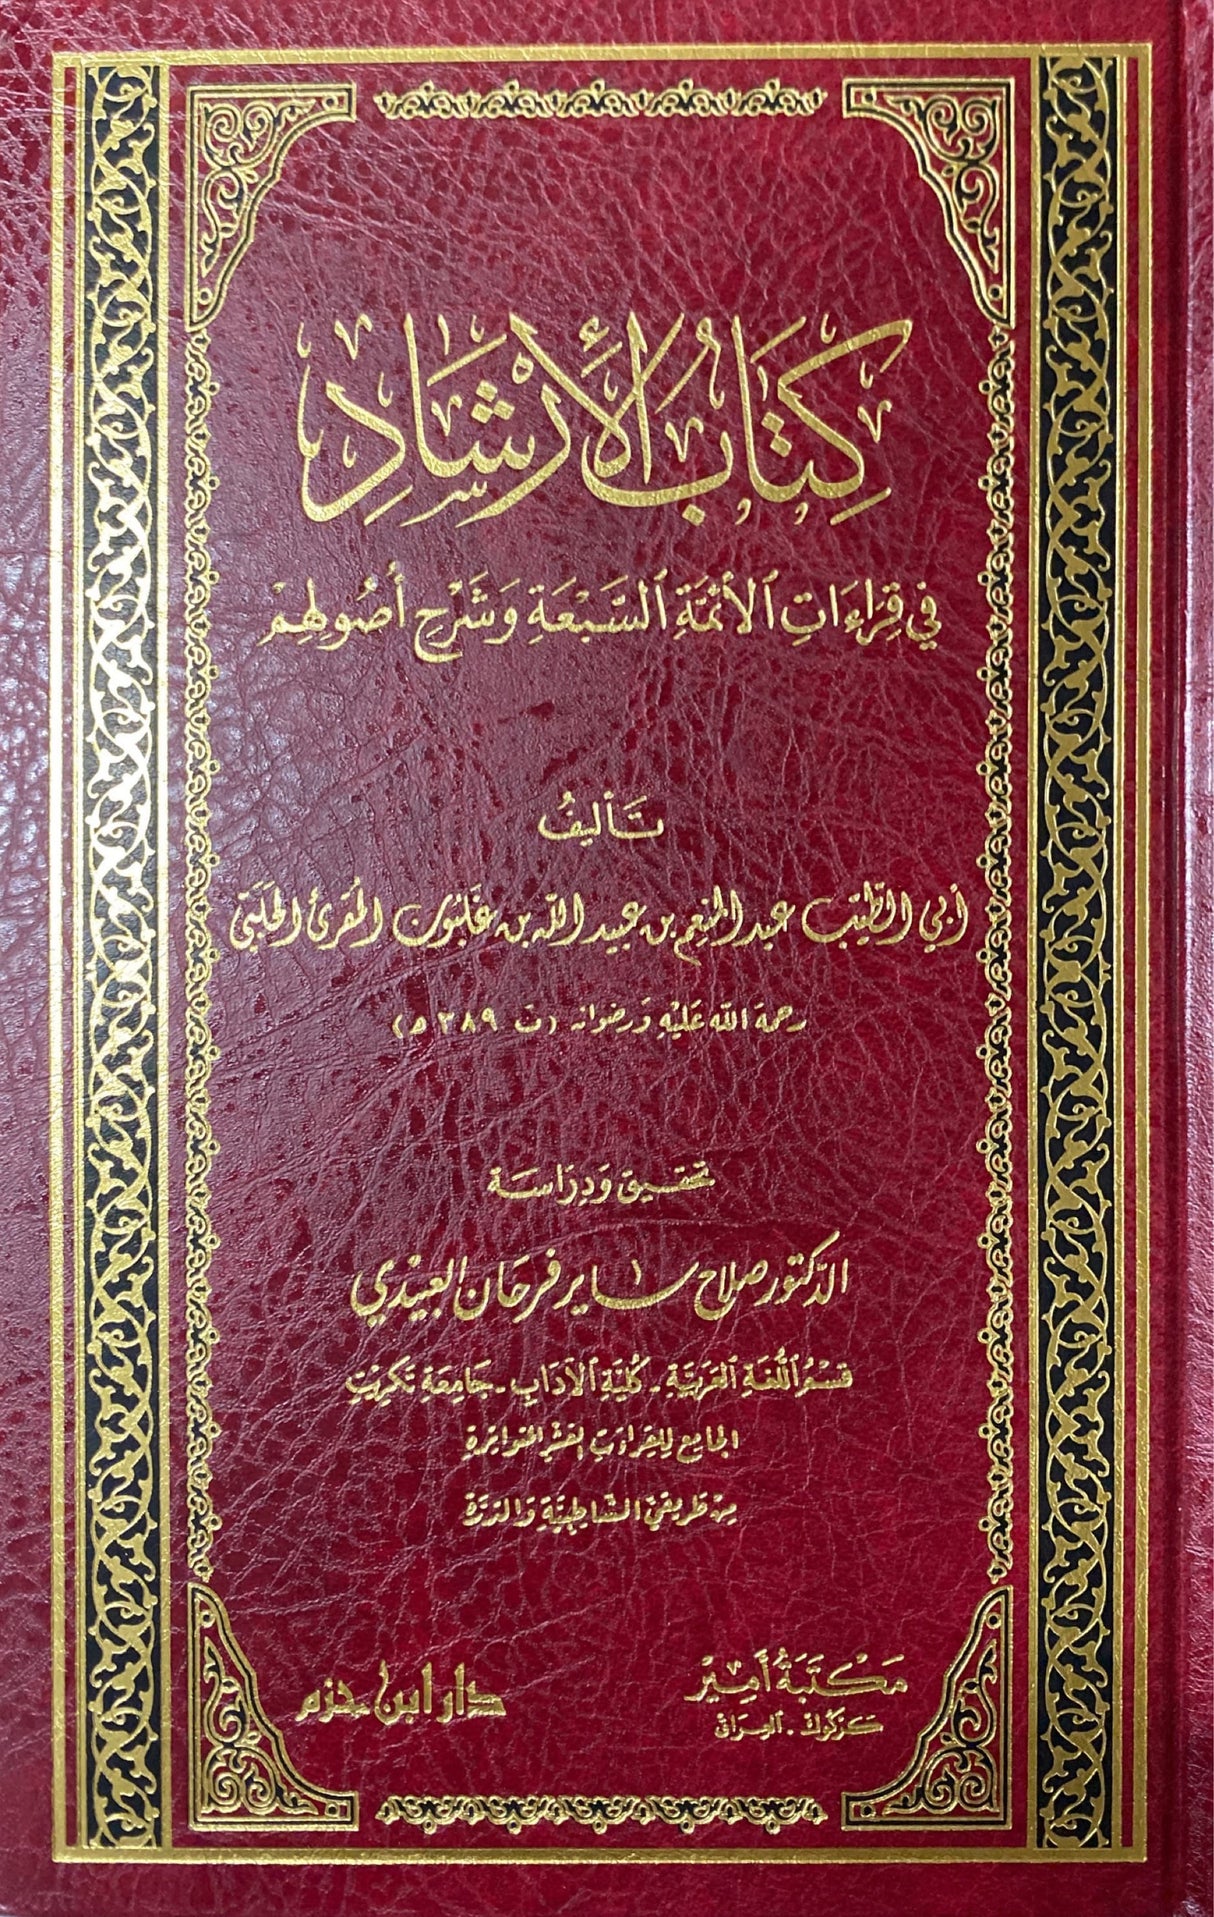 كتاب الارشاد في قراءات الائمة السبعة وشرح اصولهم    Kitab Al Irshaad Fil Qiraat Al Aimah